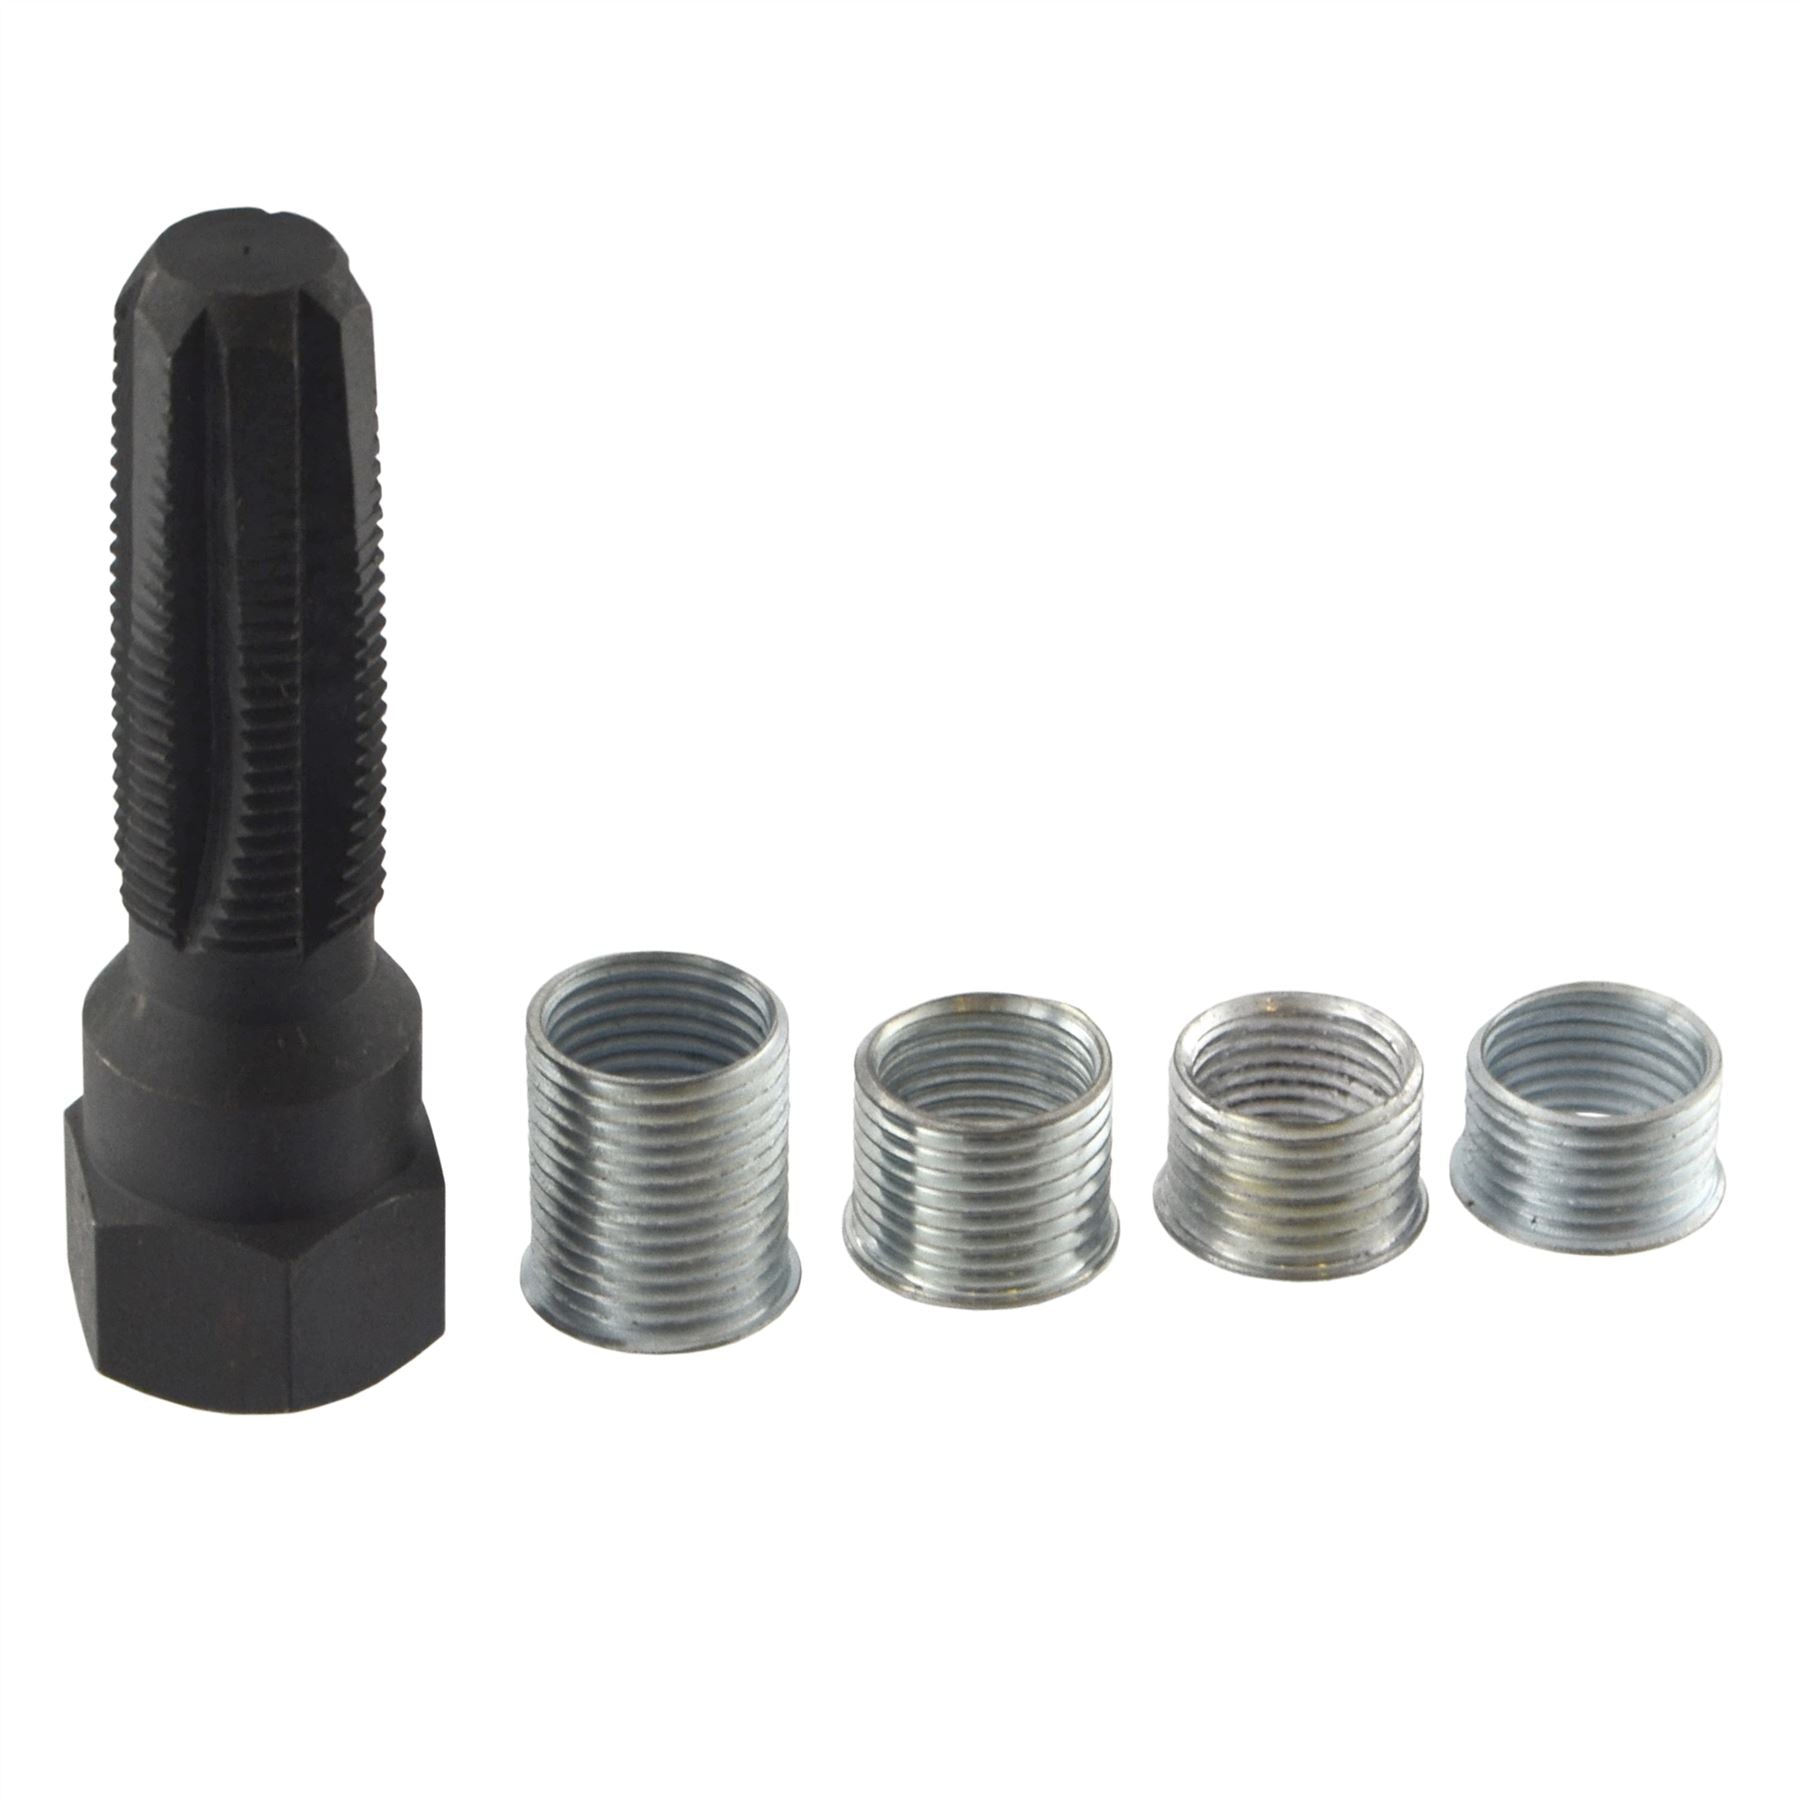 14mm Rethreader Re-Thread Rethread Tap Tool Spark Plug Insert Kit